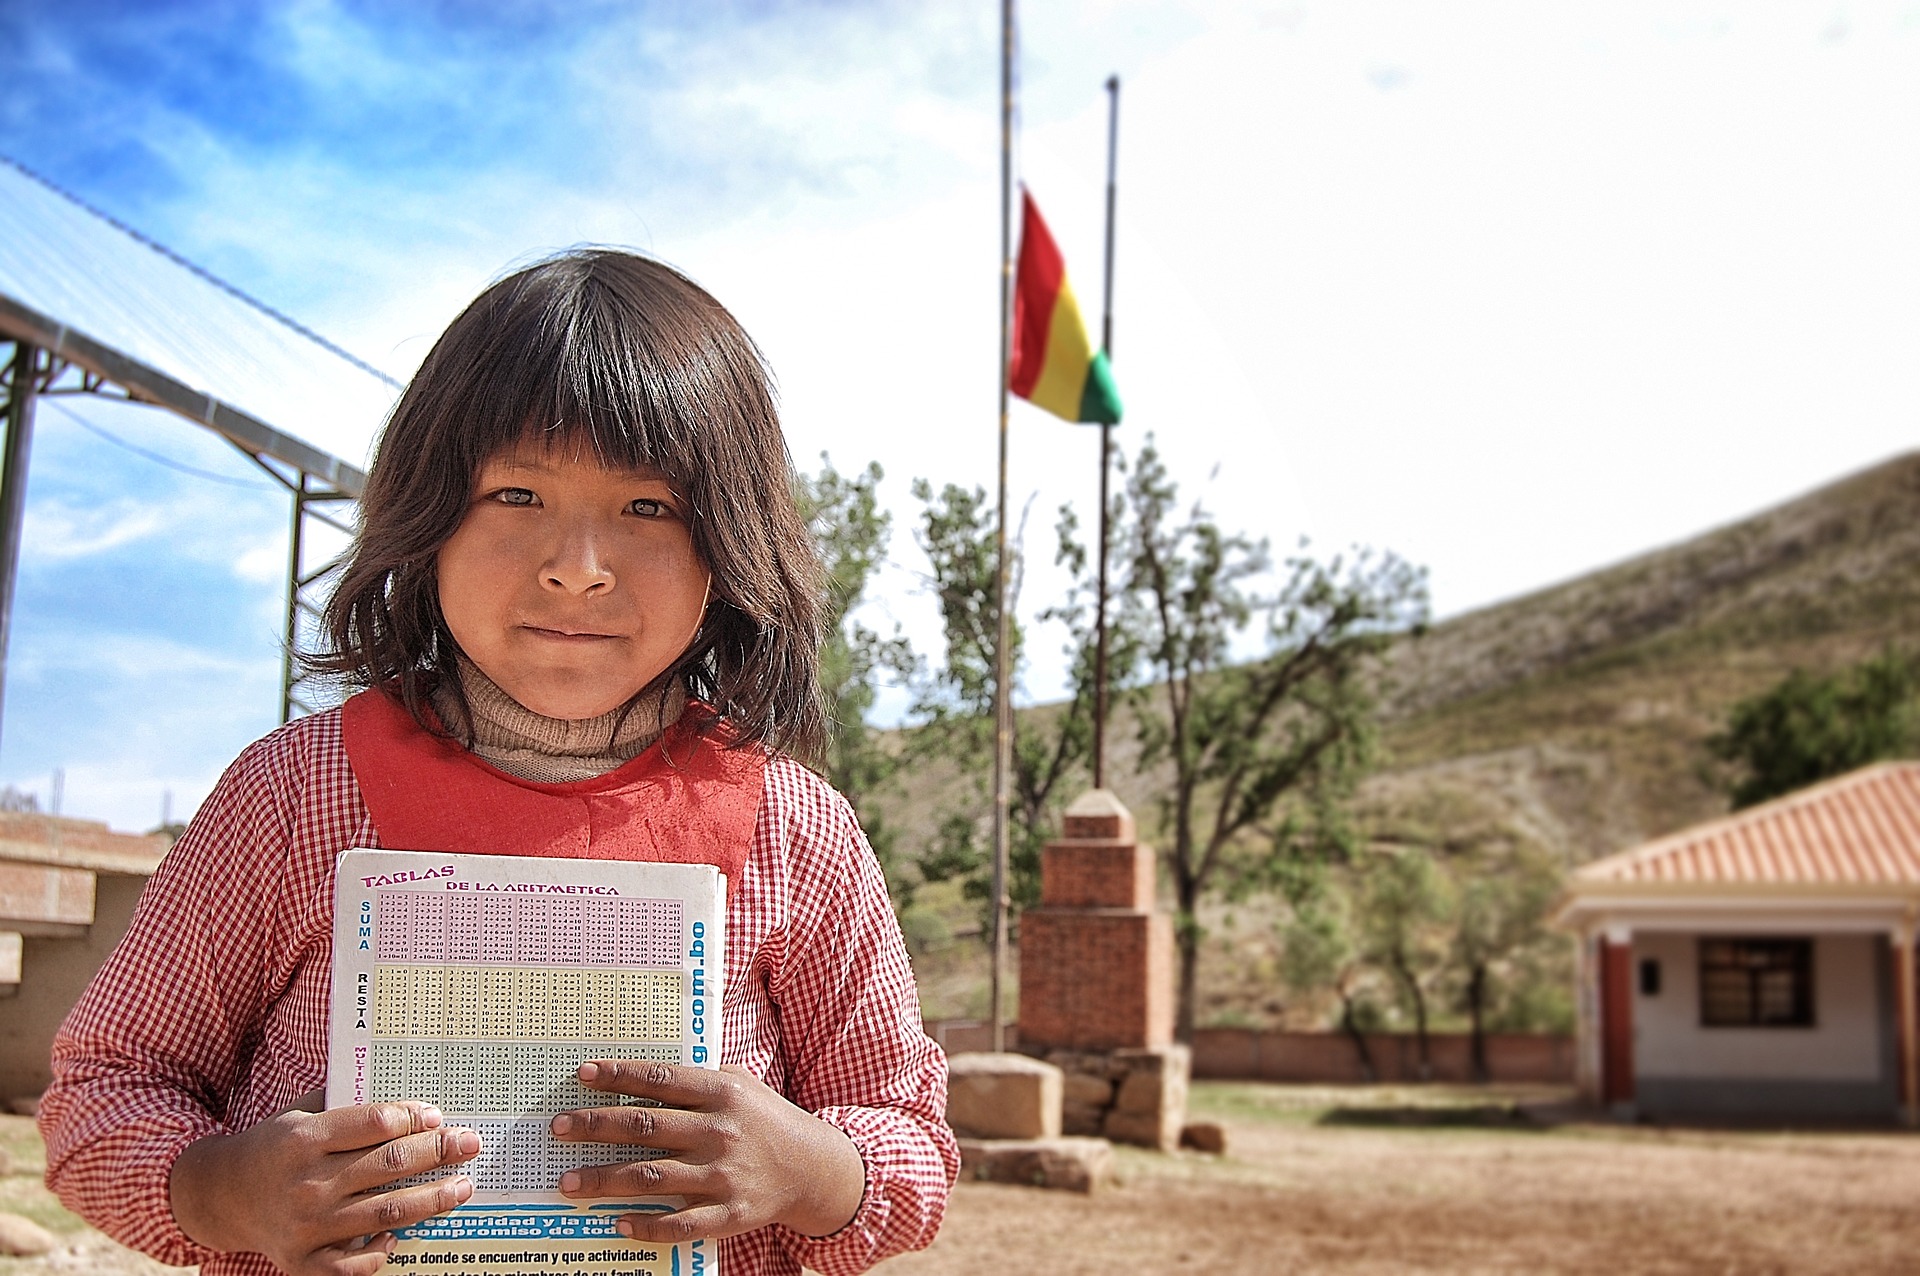 Plataforma Solidaŕia Bolivia Abriendo Horizontes entre los más desfavorecidos